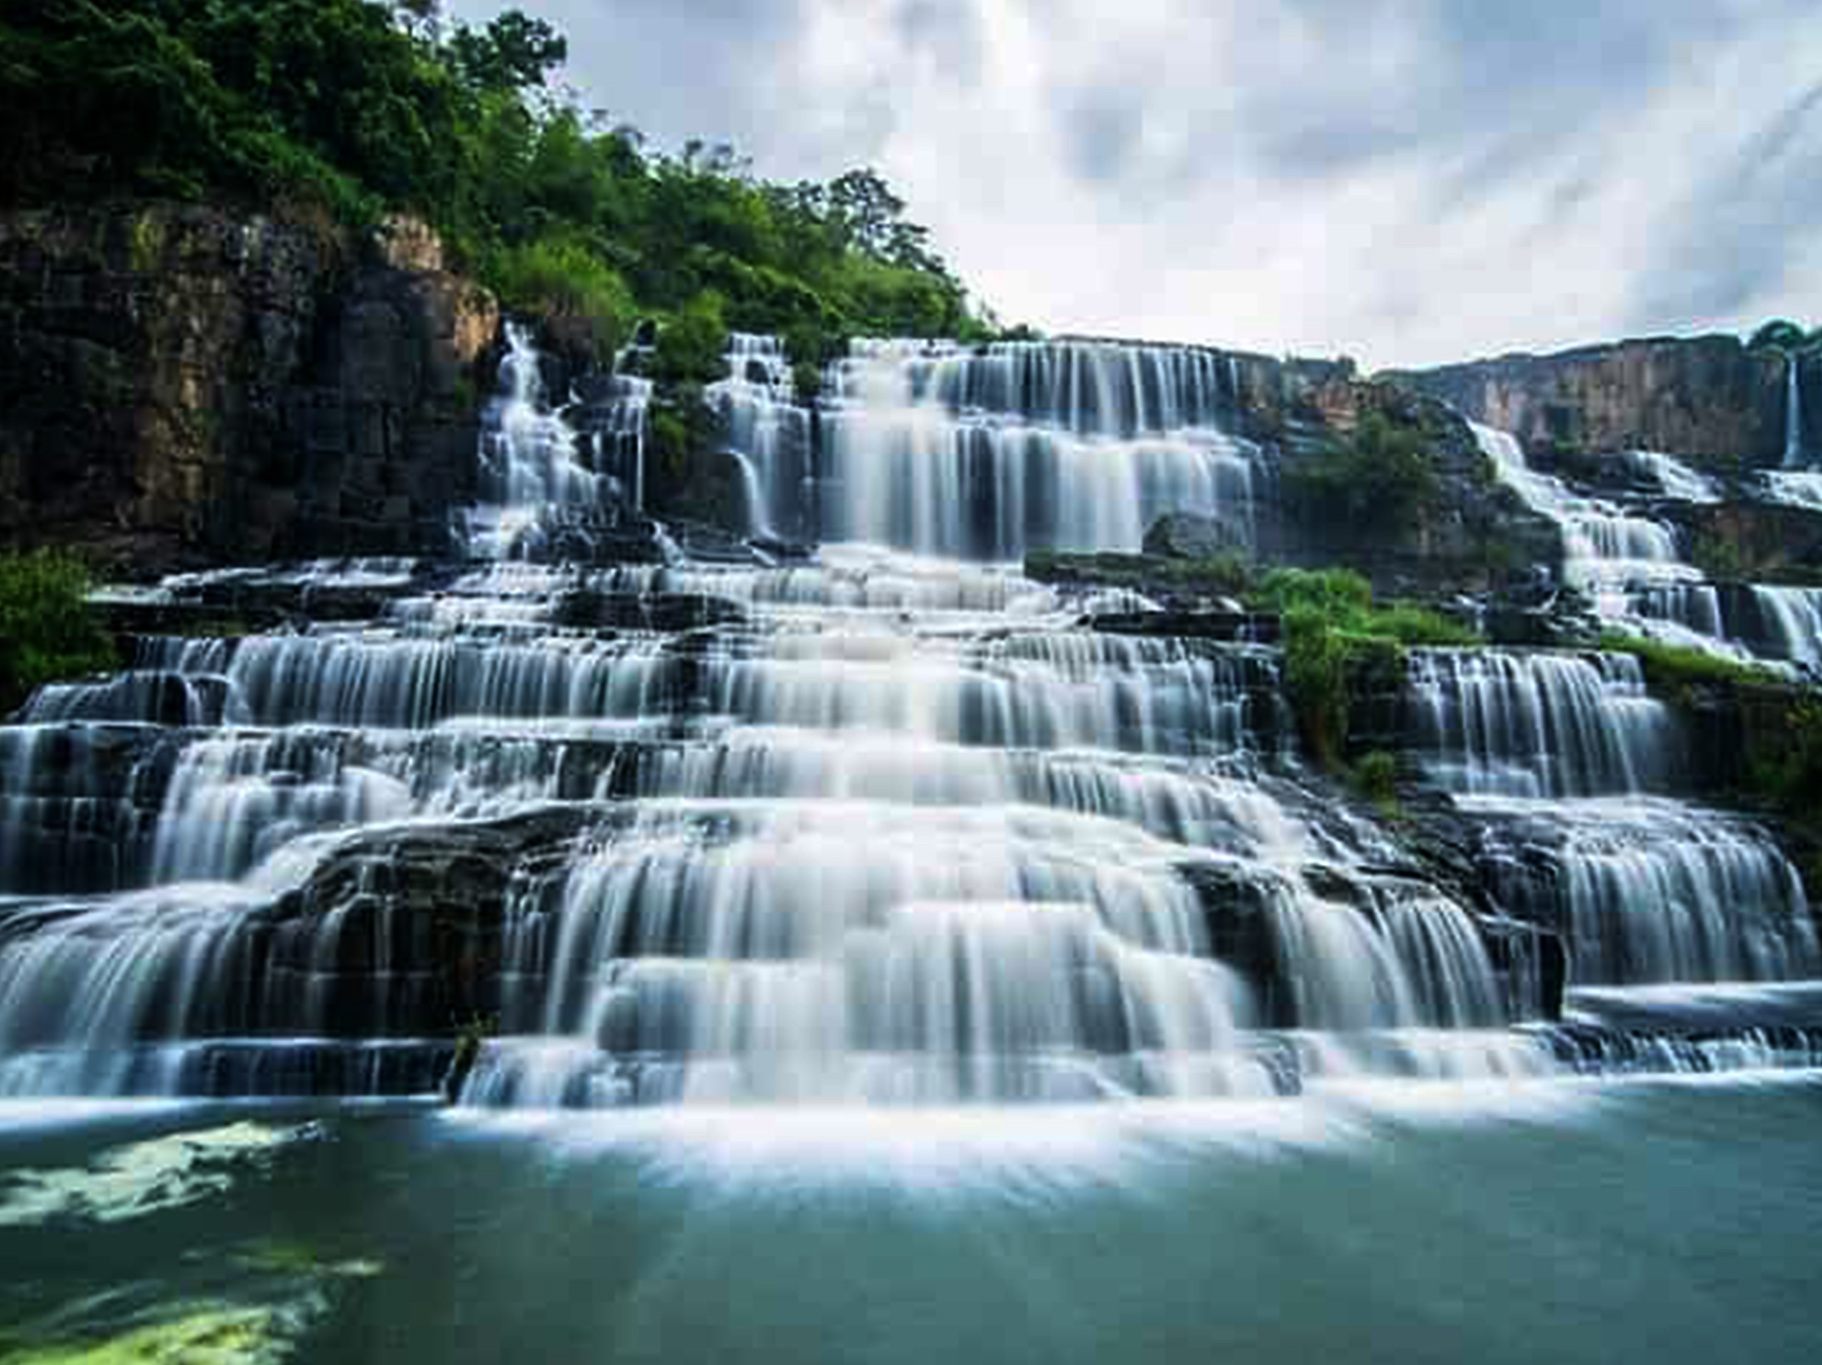 Bay Tang Waterfall